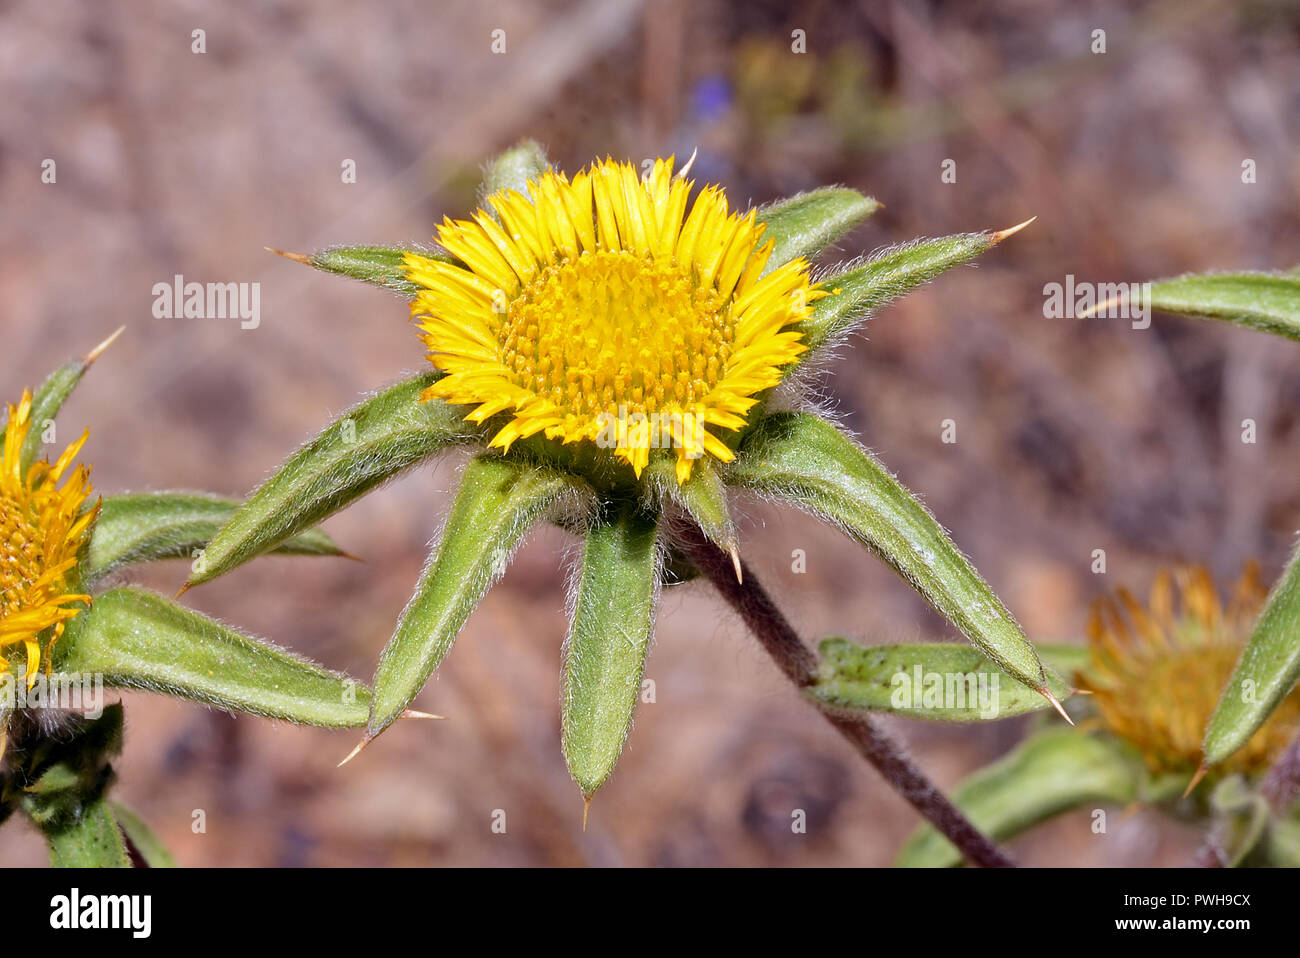 Pallore spinosa (starwort spinoso) si trova nel deserto e habitat costieri del Sud Europa, Africa del Nord, le Isole Canarie e il Medio Oriente. Foto Stock